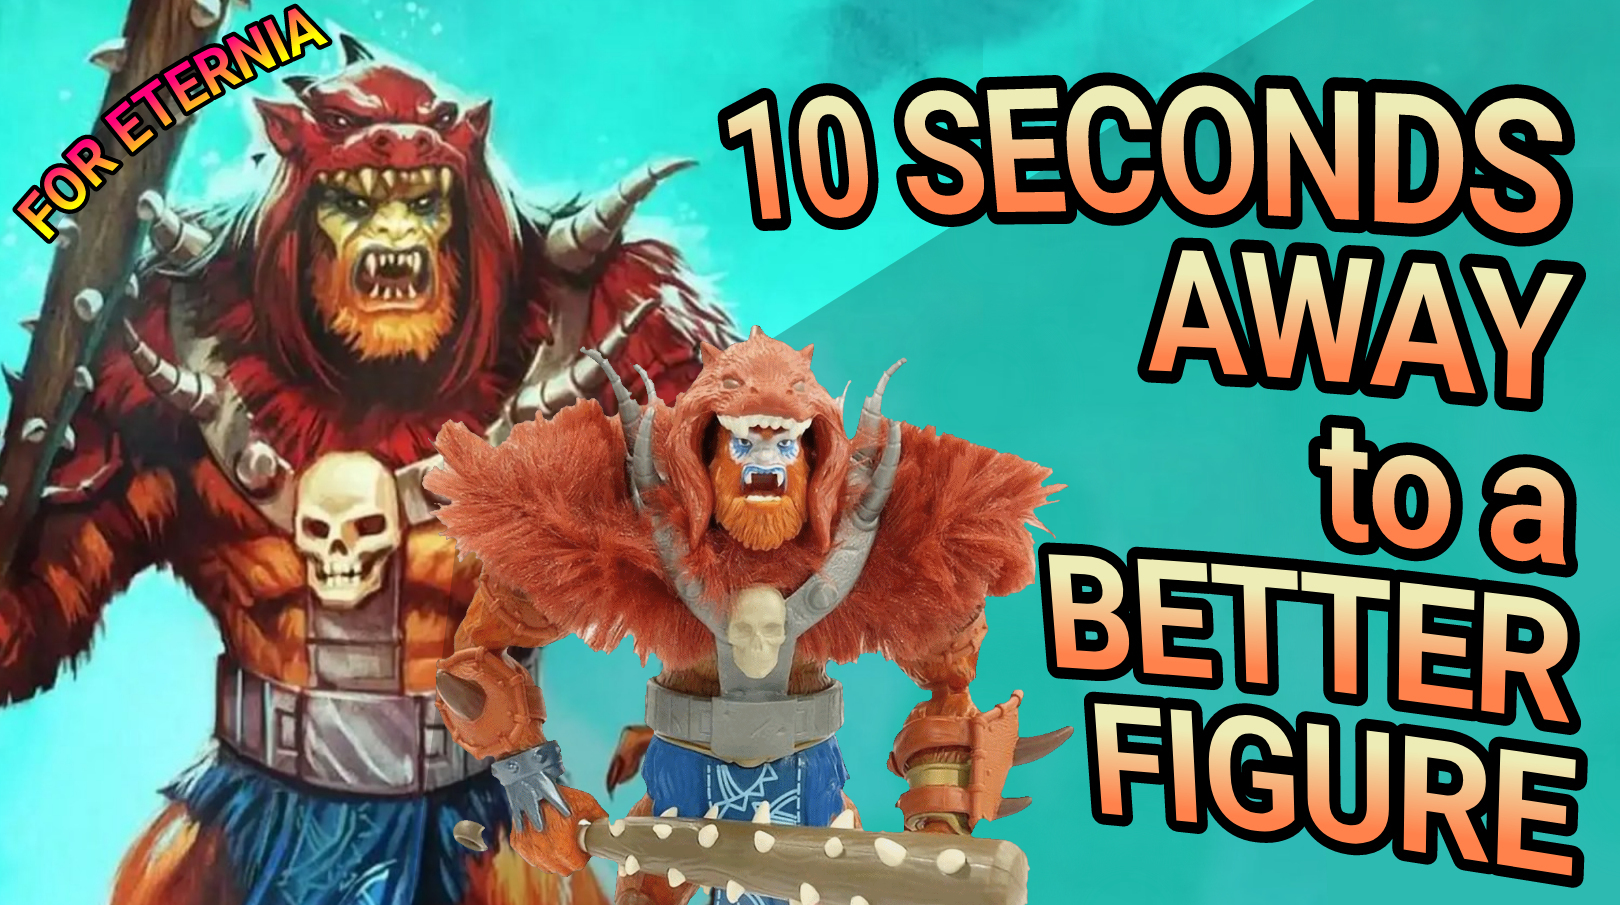 10 Seconds Away to a Better Figure, starring New Eternia Beast Man